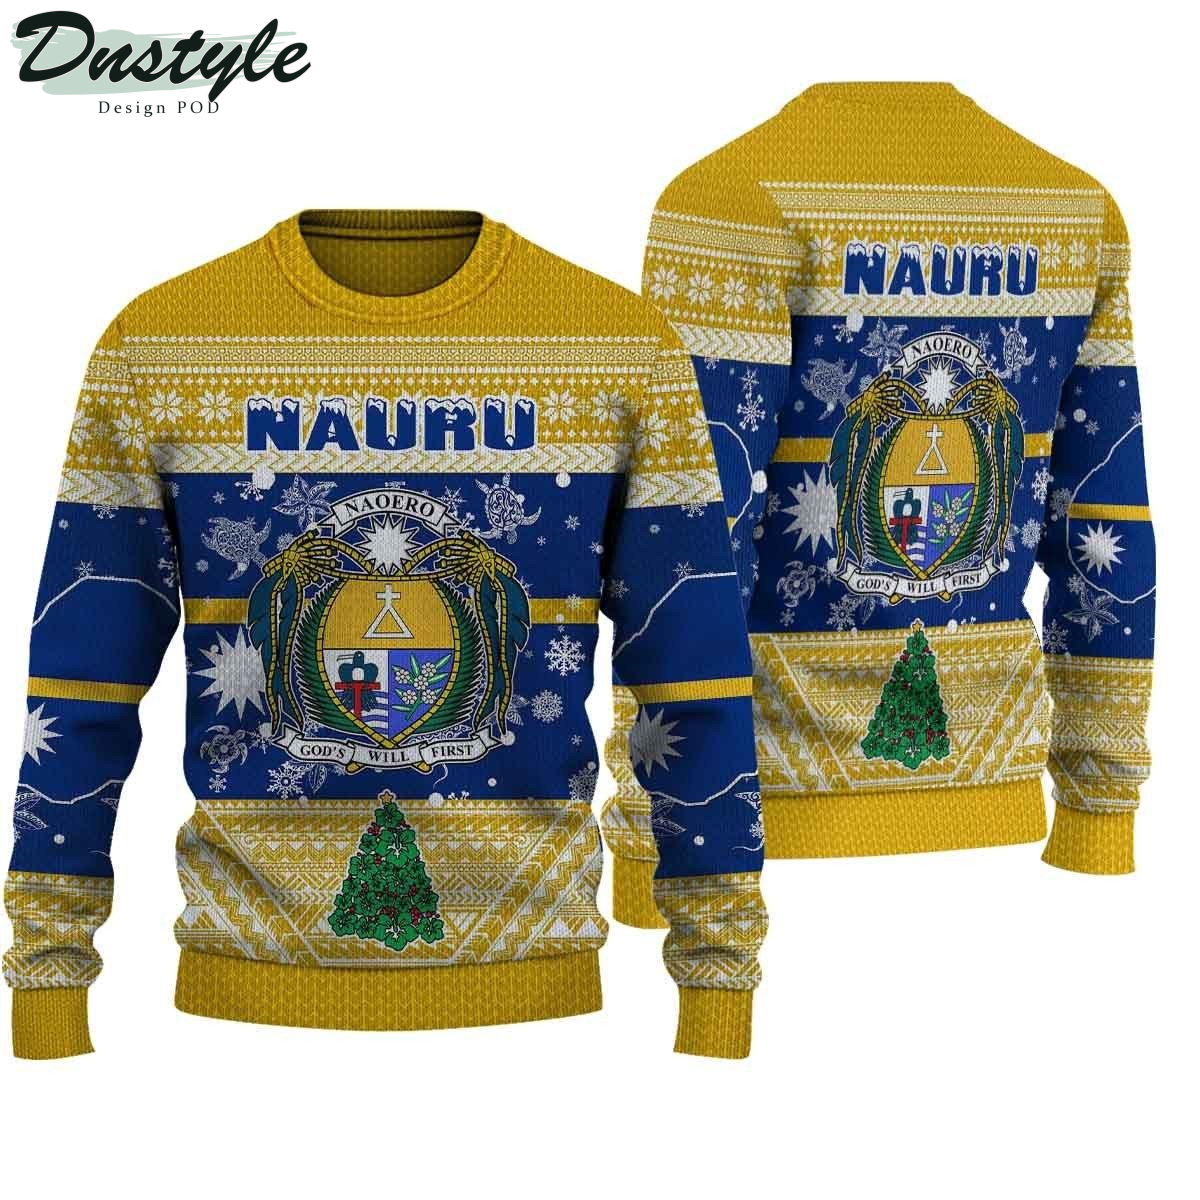 Nauru ugly christmas sweater